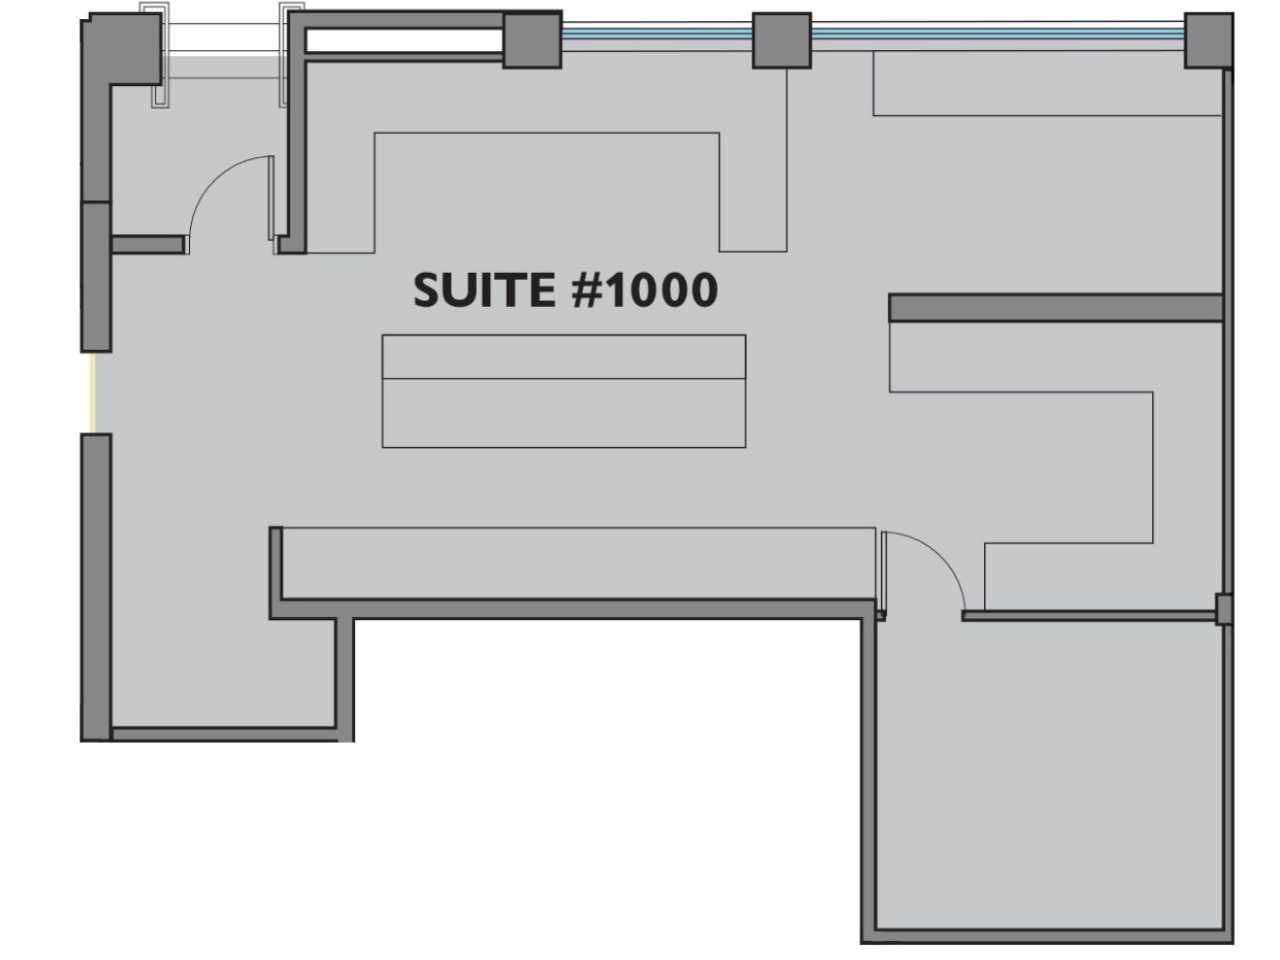 K2-Building-Suite-1000-Floor-Plan